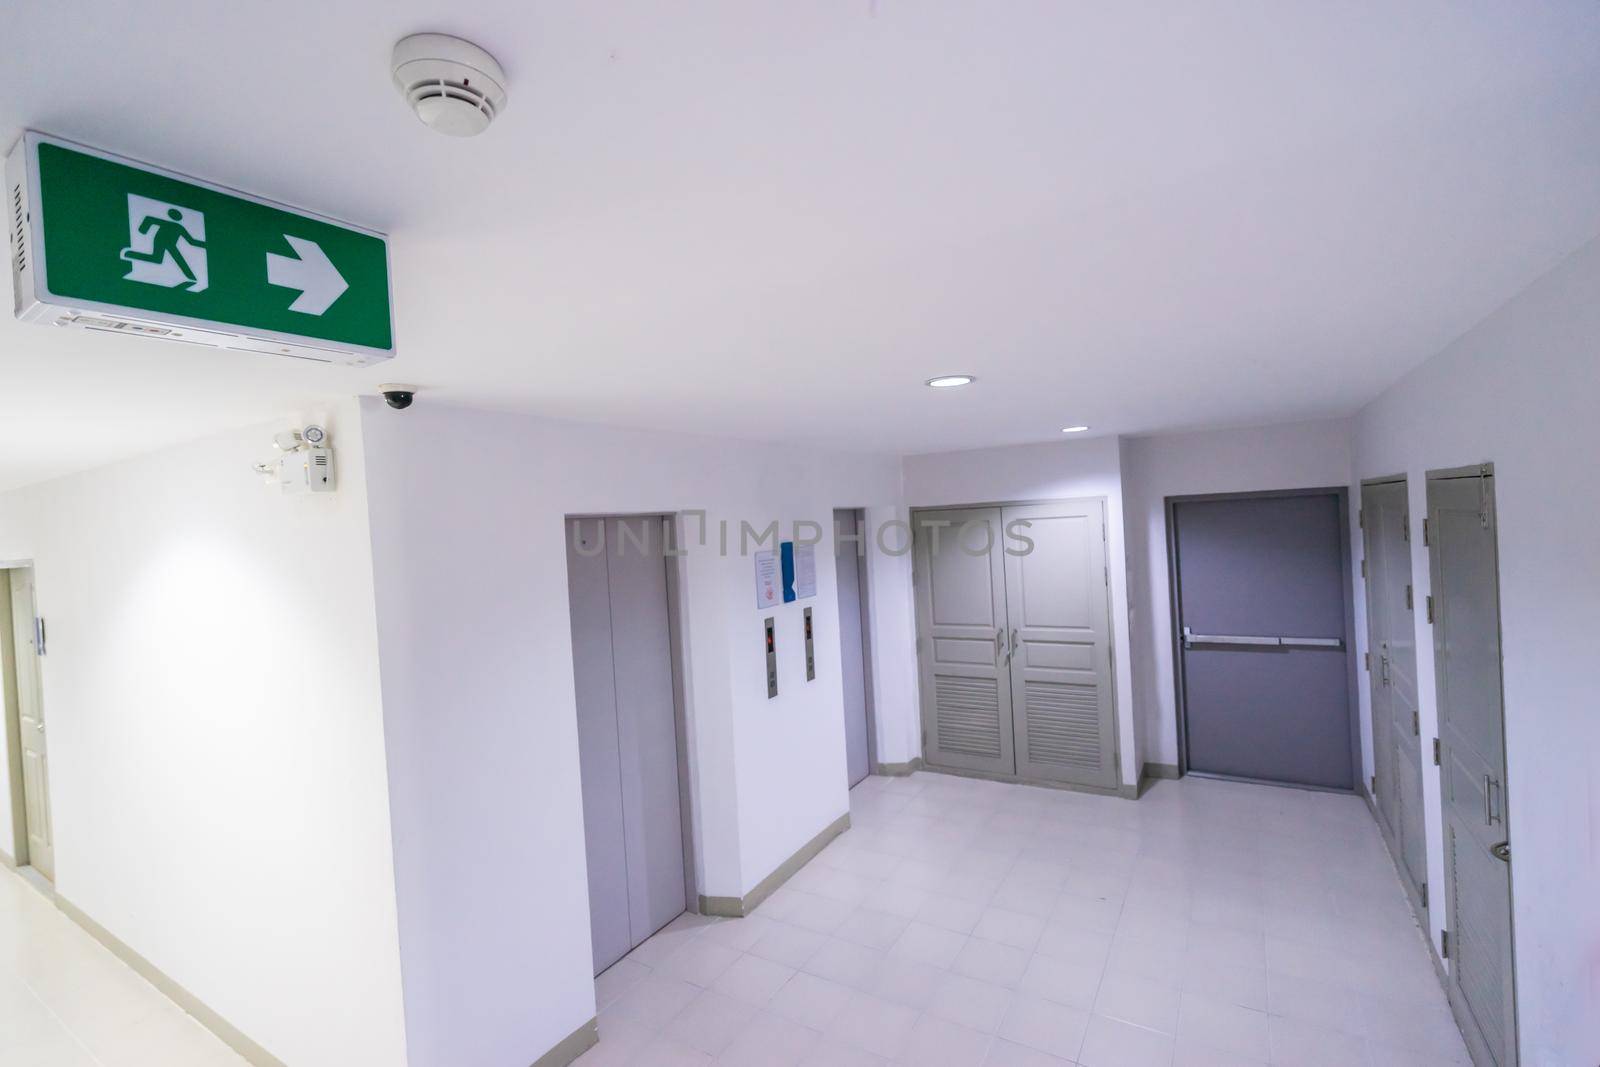 Emergency door escape light sign in building